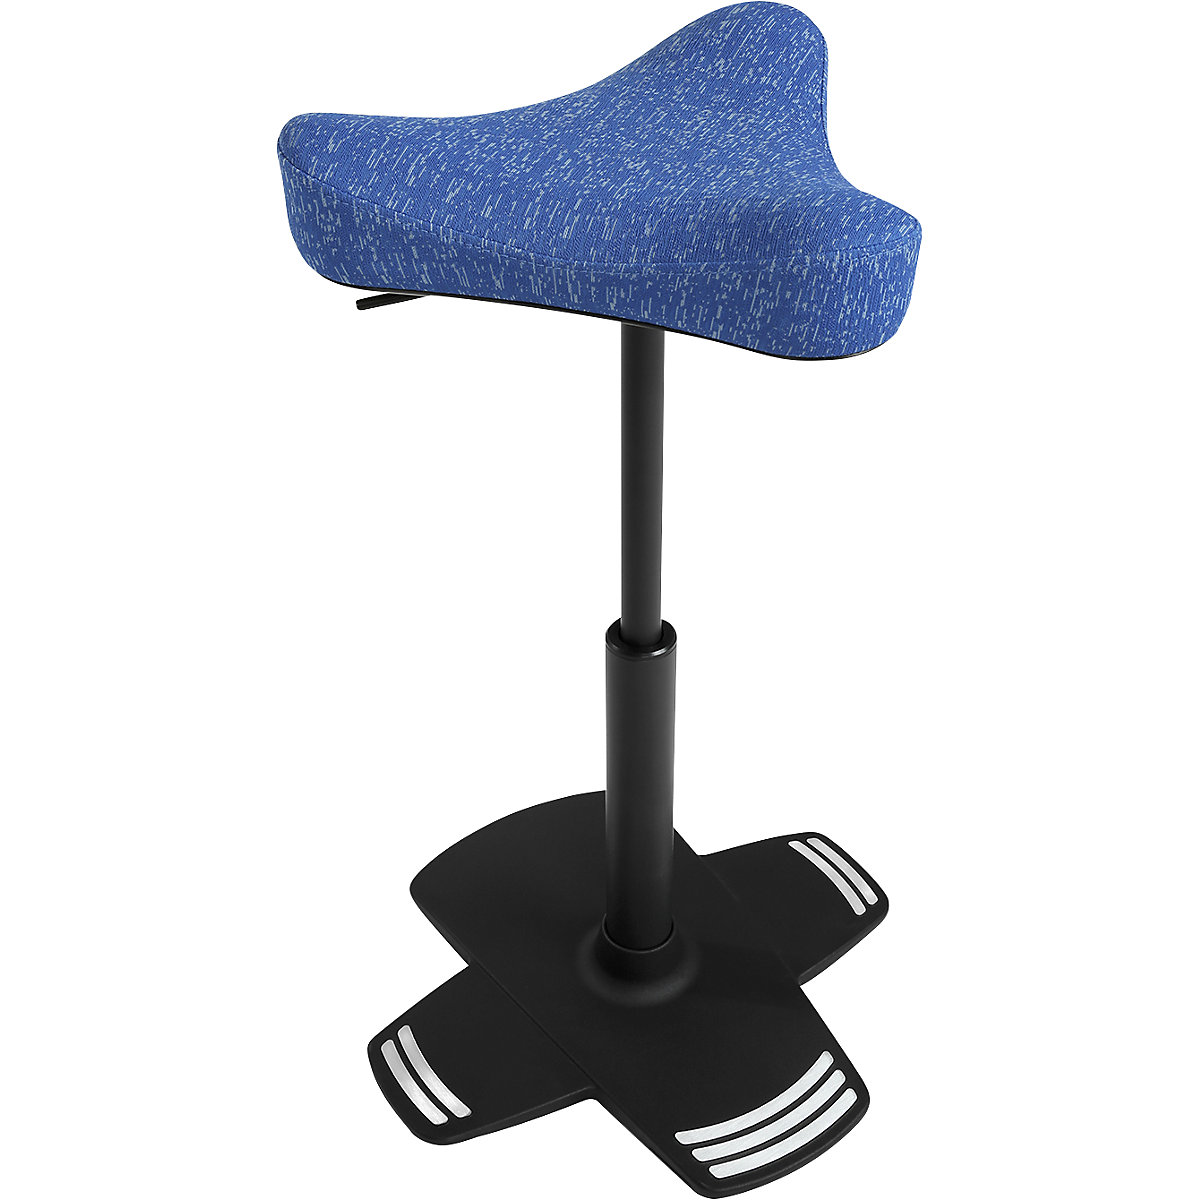 Stahulp SITNESS FALCON – Topstar, met ergonomisch gevormde zadelzitting, bekleding blauw-6